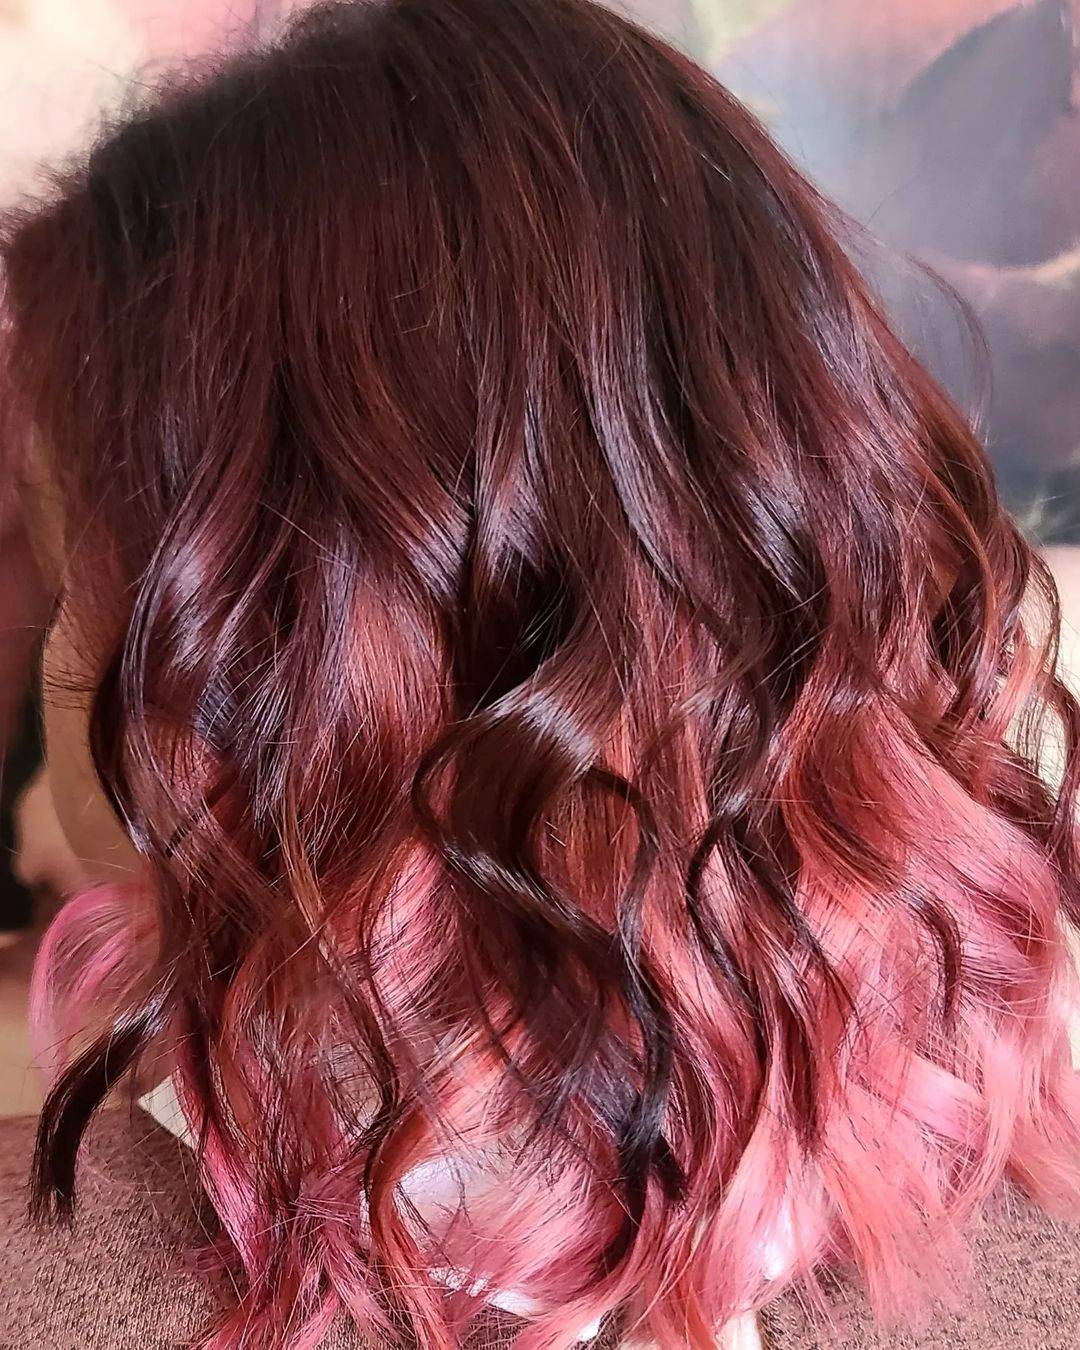 Burgundy hair color 344 burgundy hair color | burgundy hair color for women | burgundy hair color highlights Burgundy Hair Color